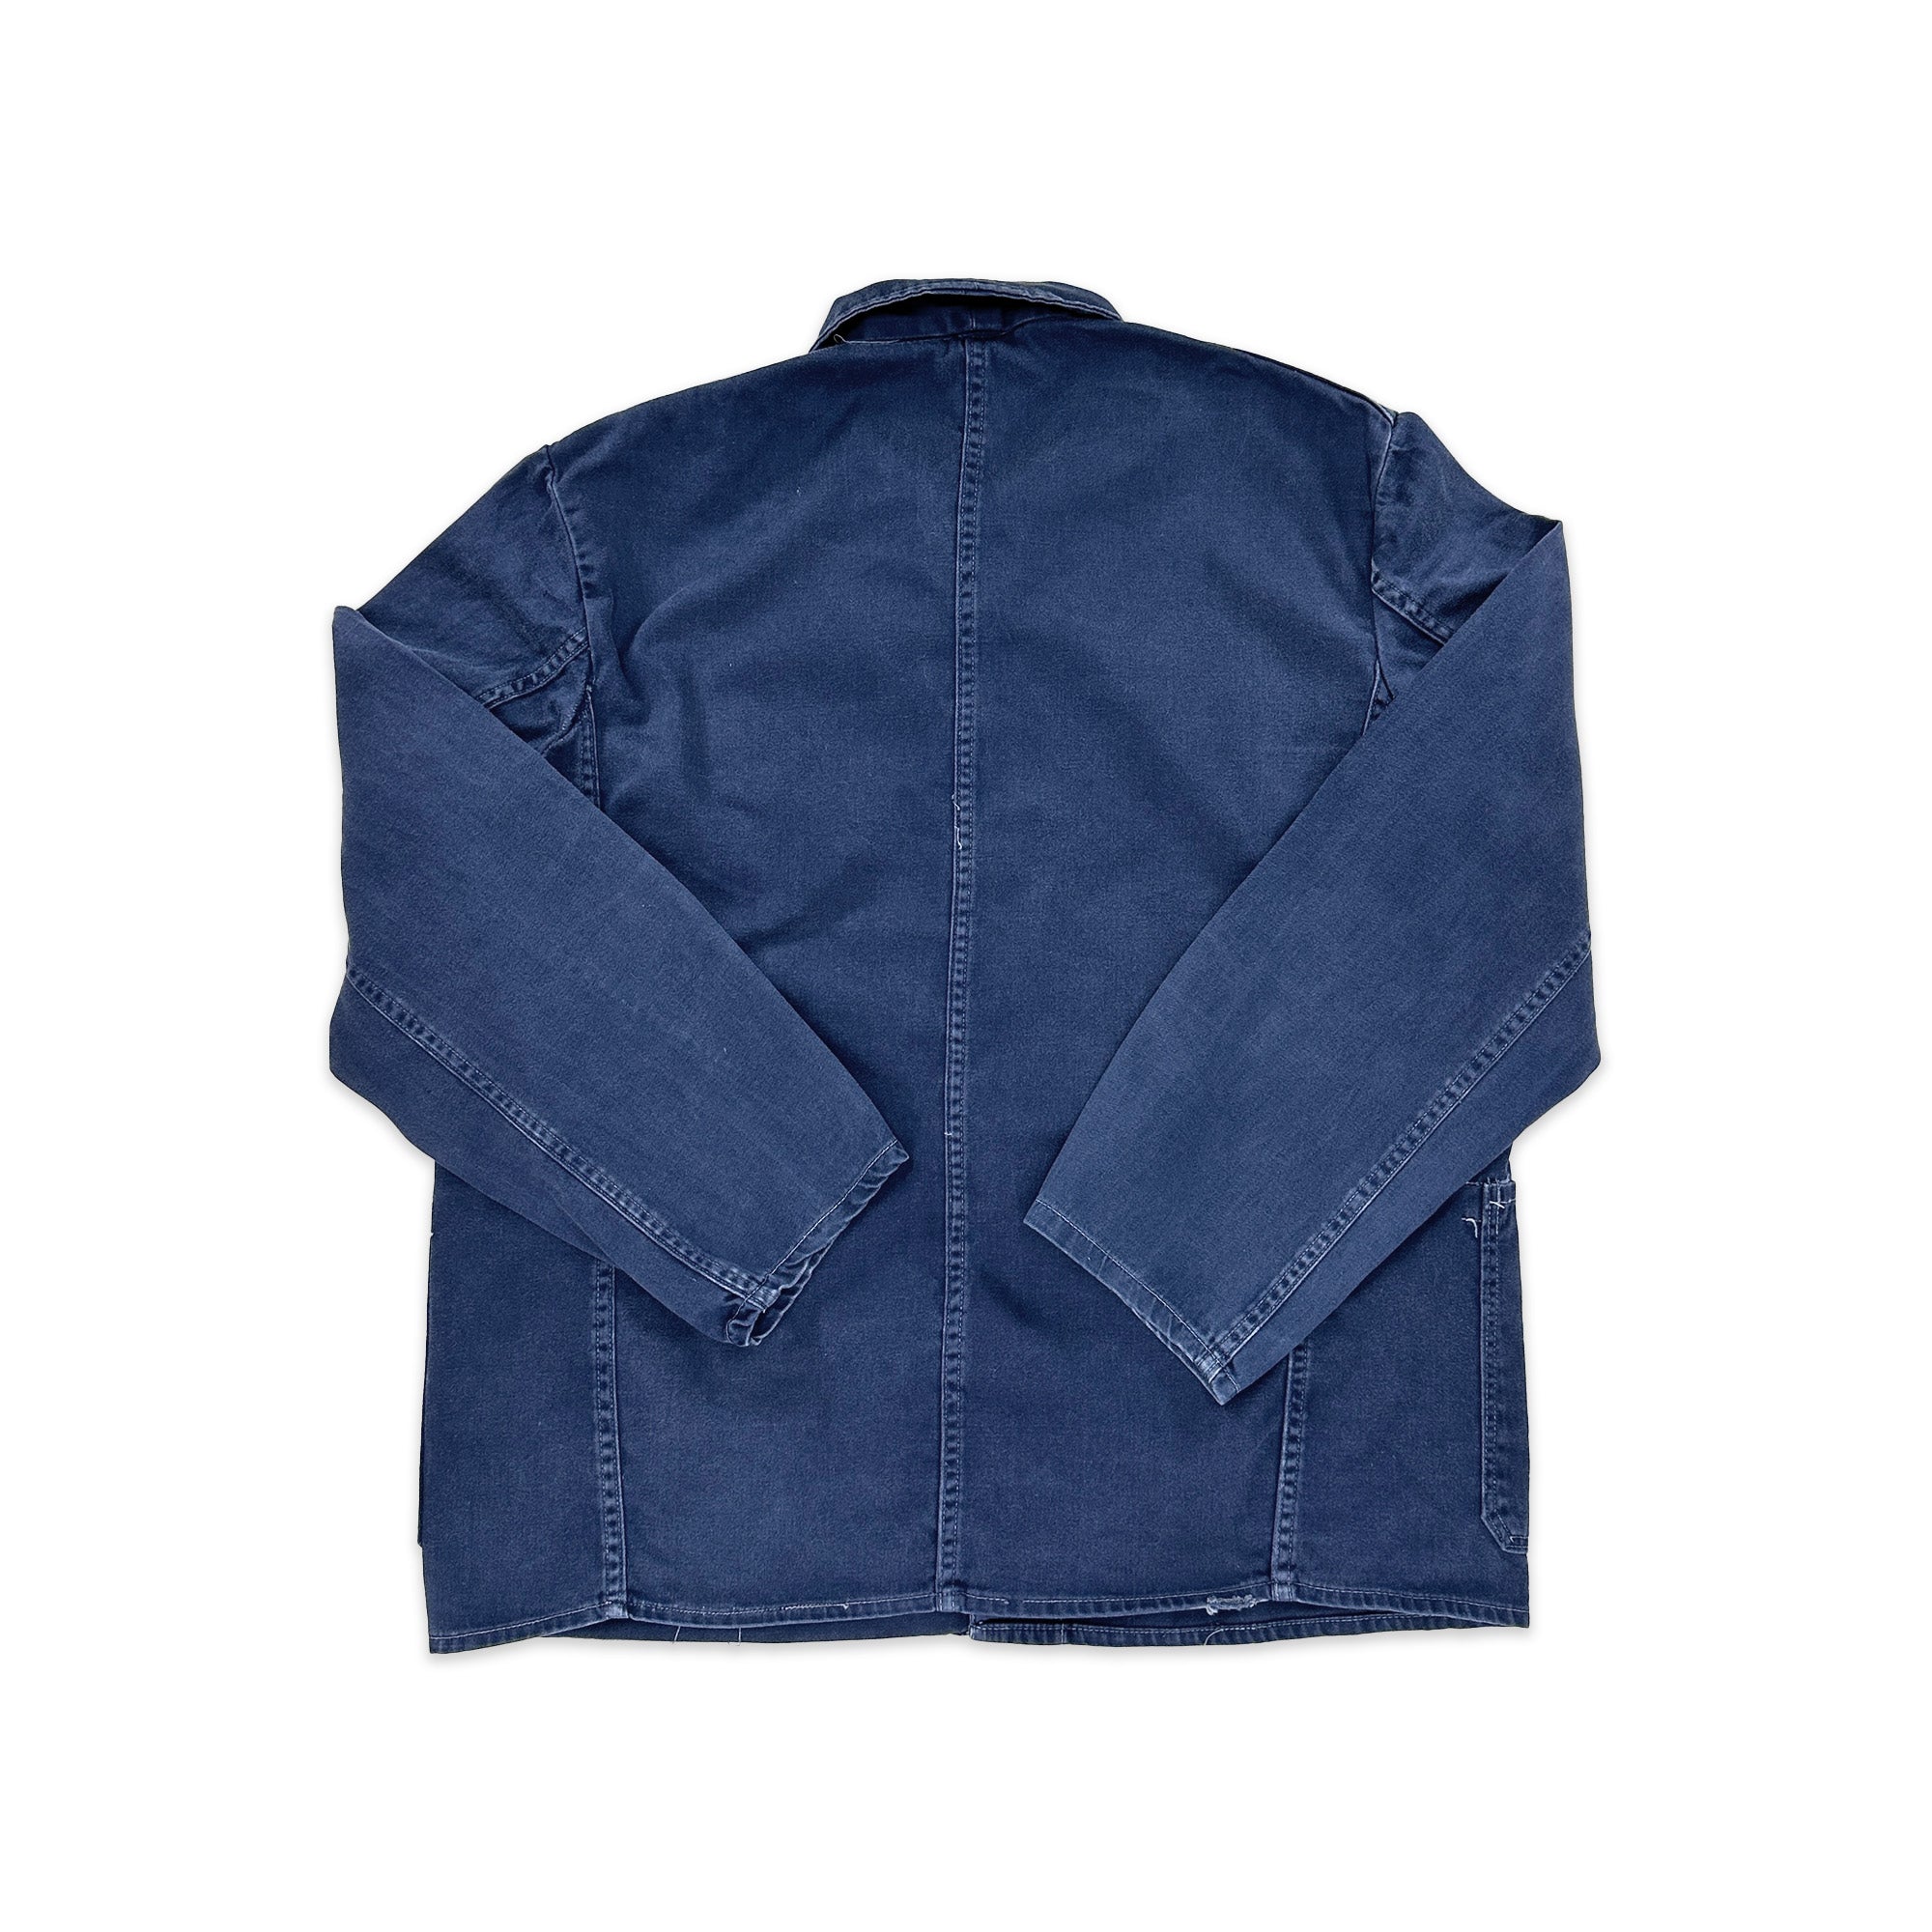 Thrashed Vintage French Work Jacket - Medium / Large - 0